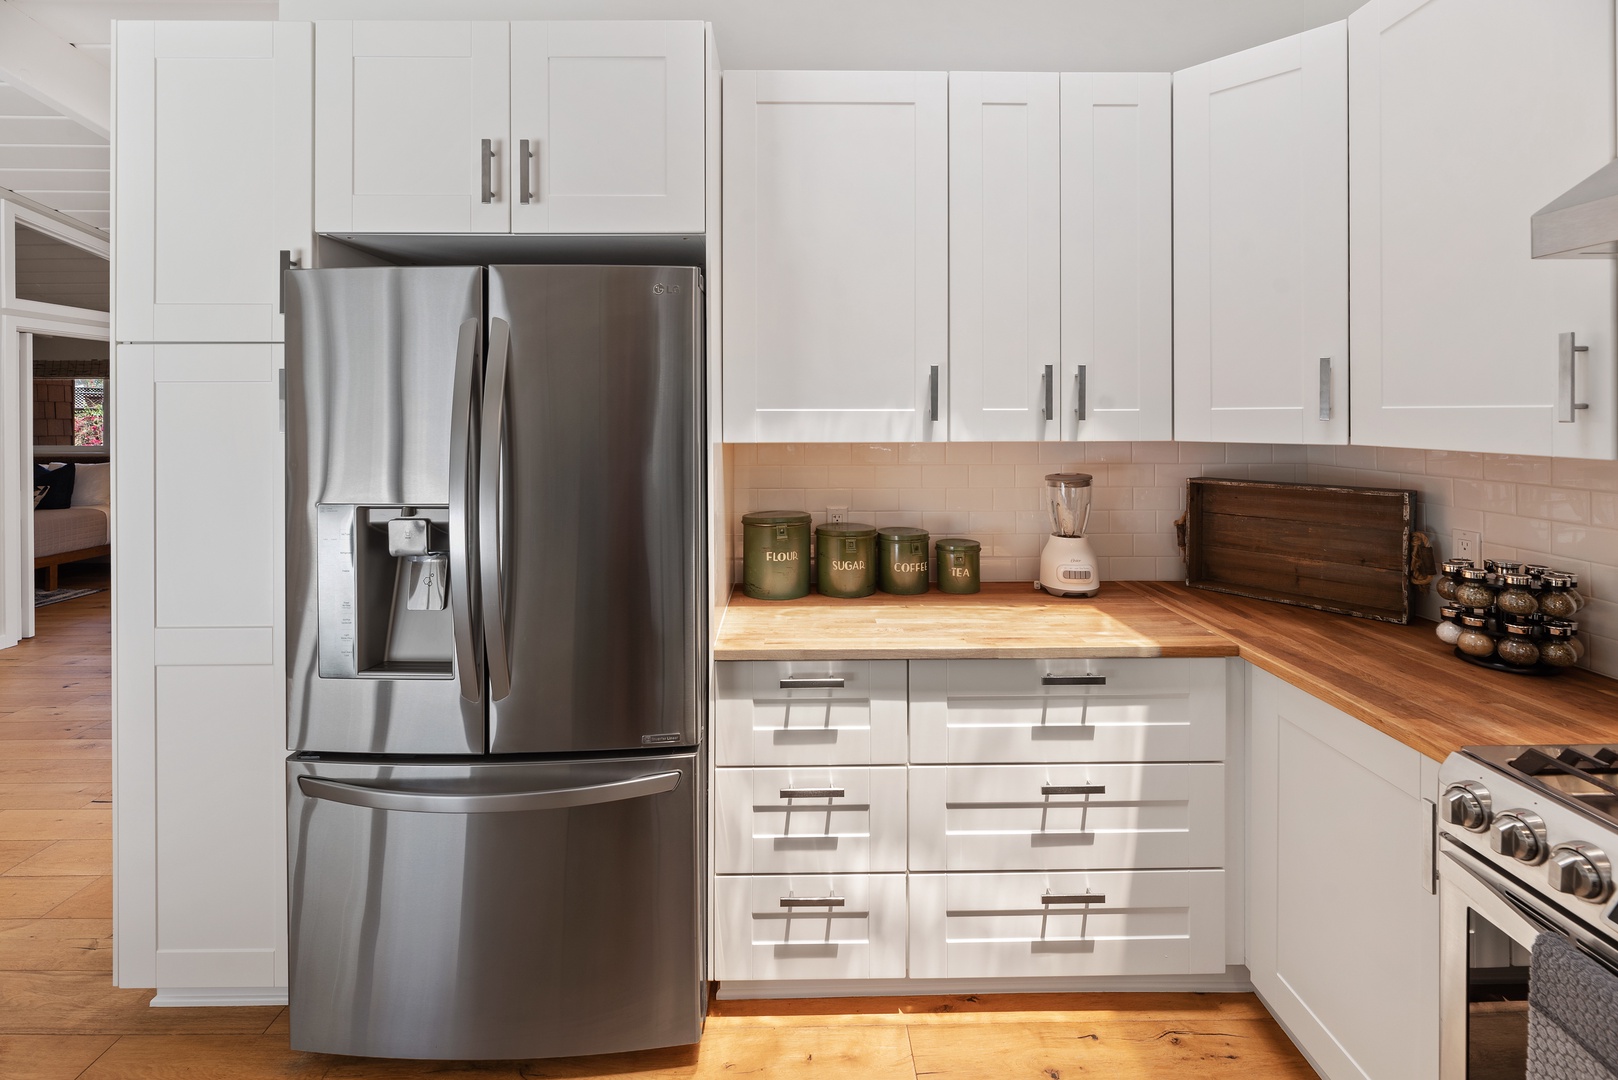 Del Mar Vacation Rentals, Del Mar Zuni Delight - Kitchen has a spacious fridge